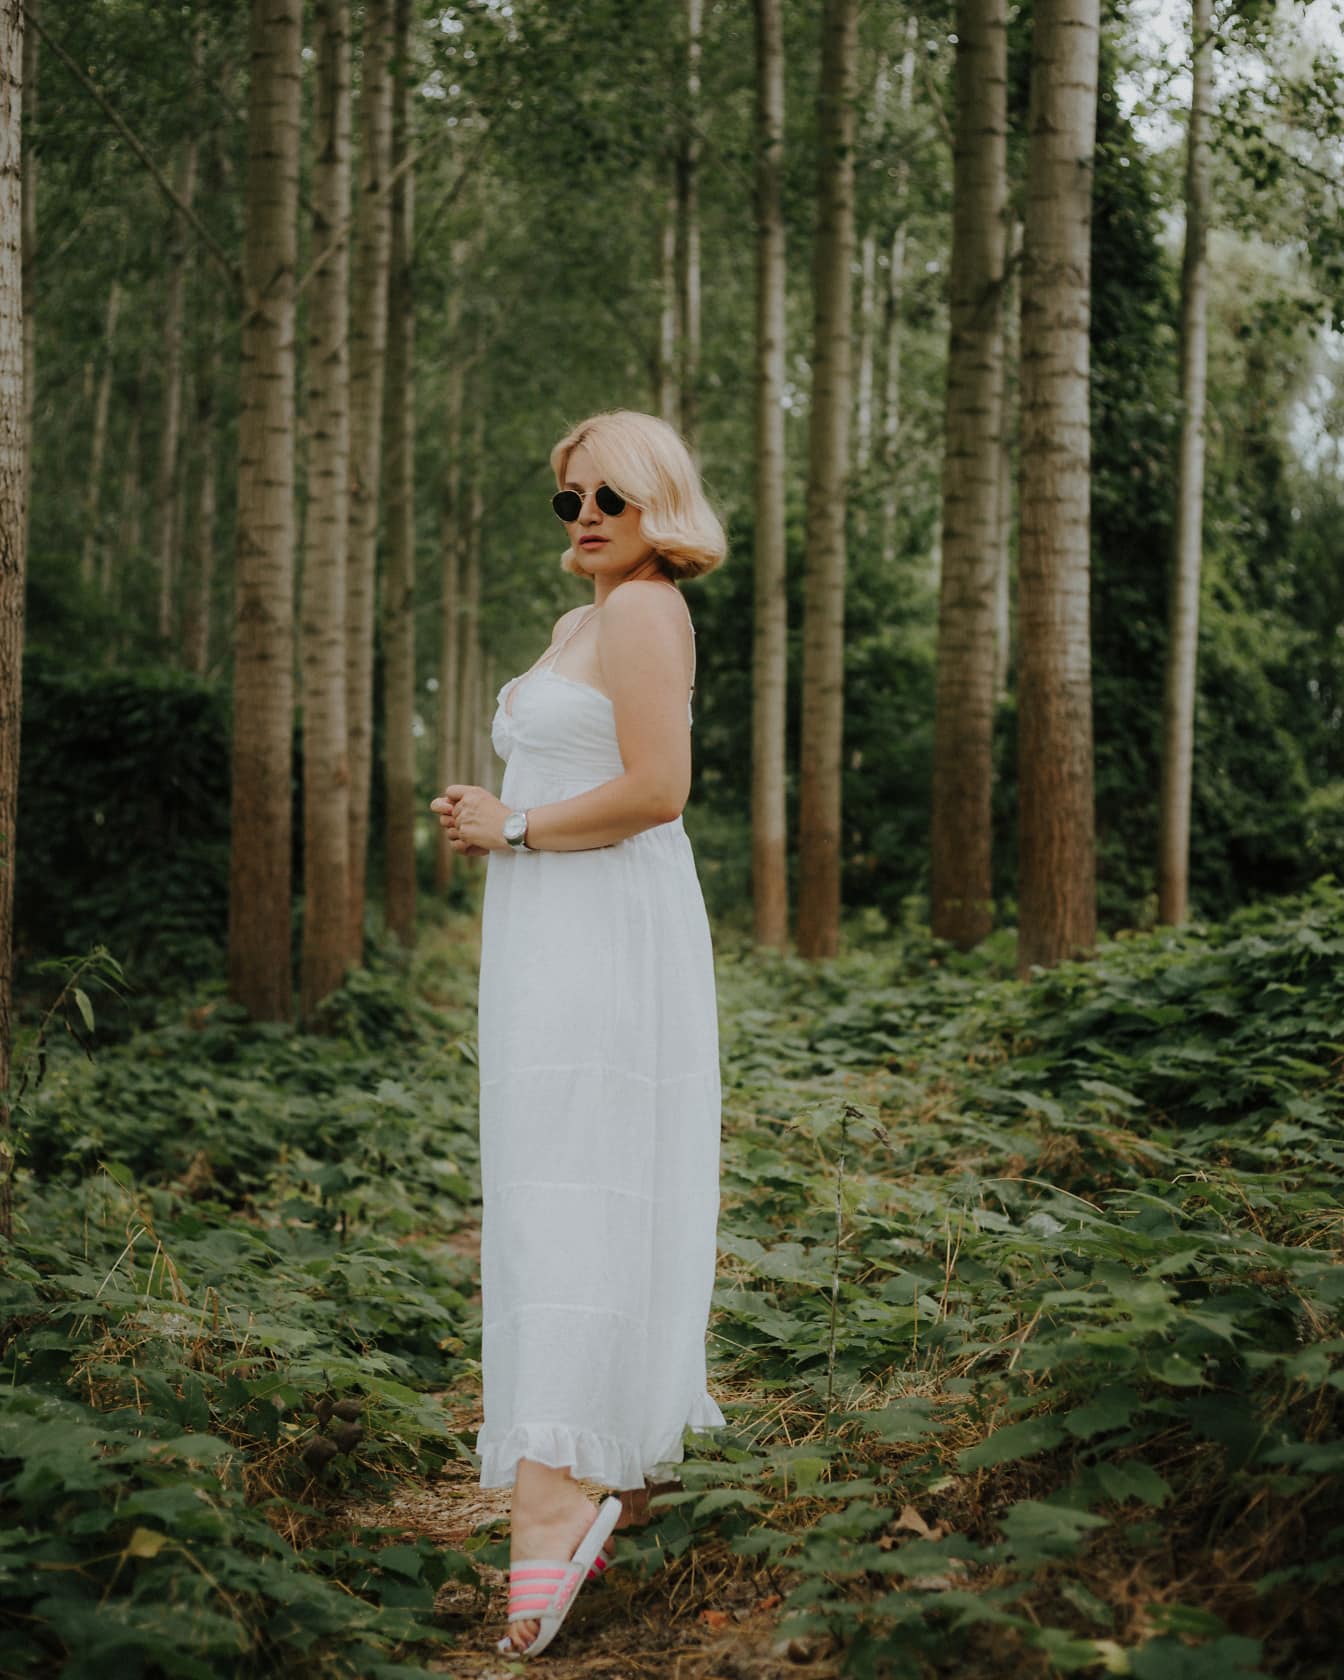 Magnifique blonde en robe blanche dans les bois verts